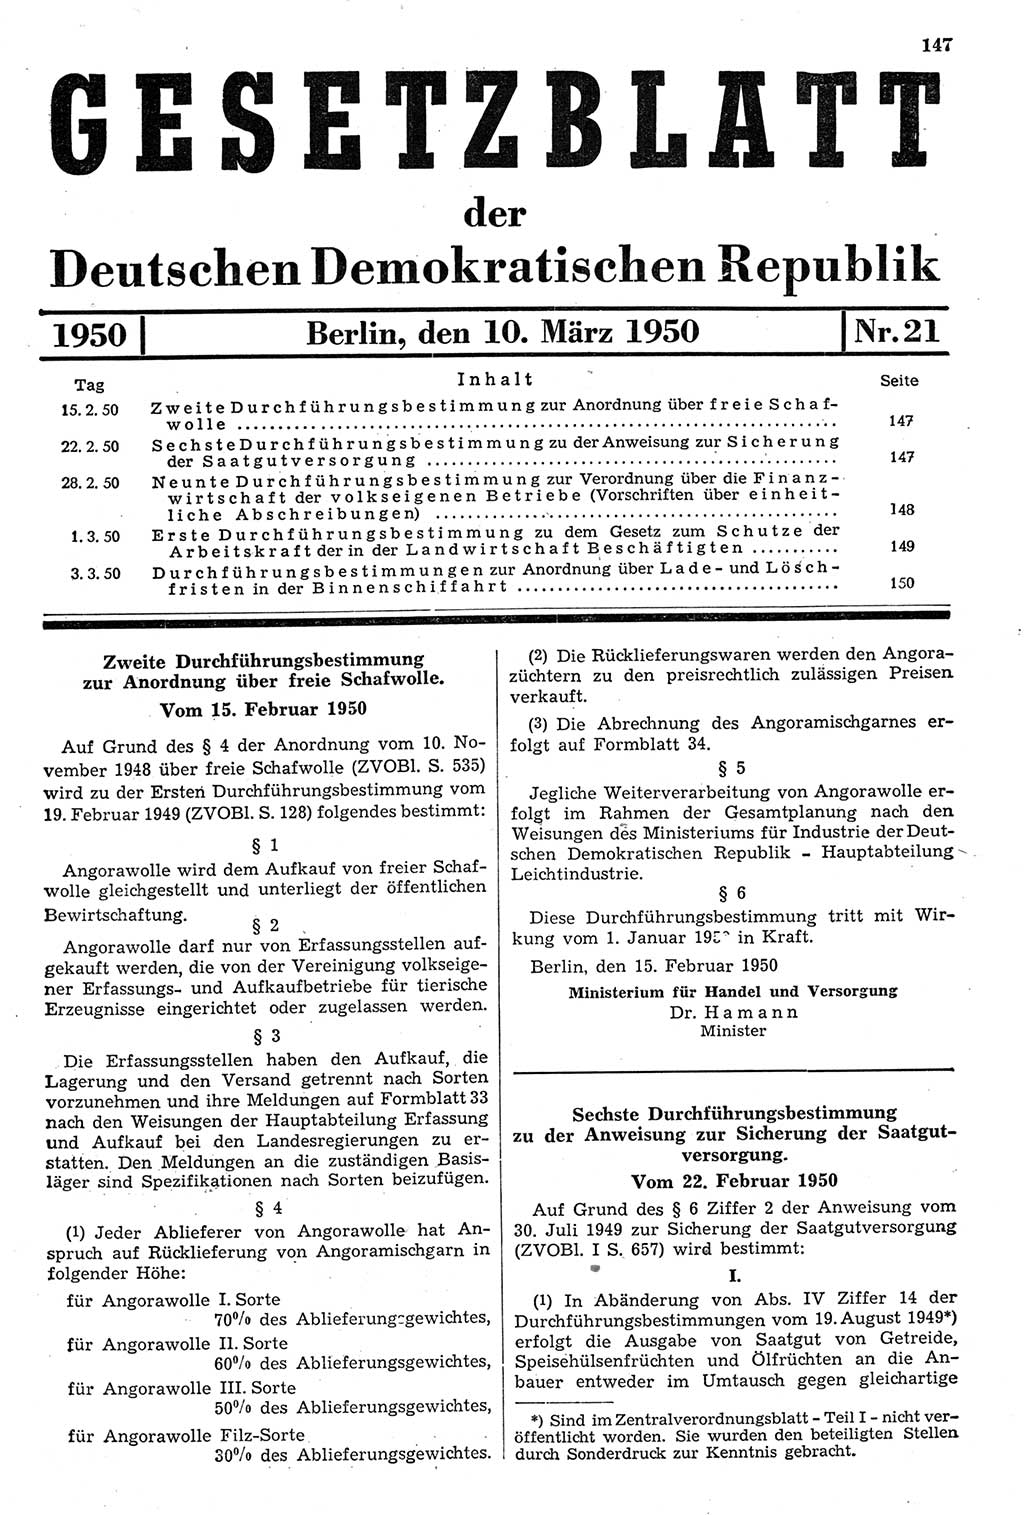 Gesetzblatt (GBl.) der Deutschen Demokratischen Republik (DDR) 1950, Seite 147 (GBl. DDR 1950, S. 147)